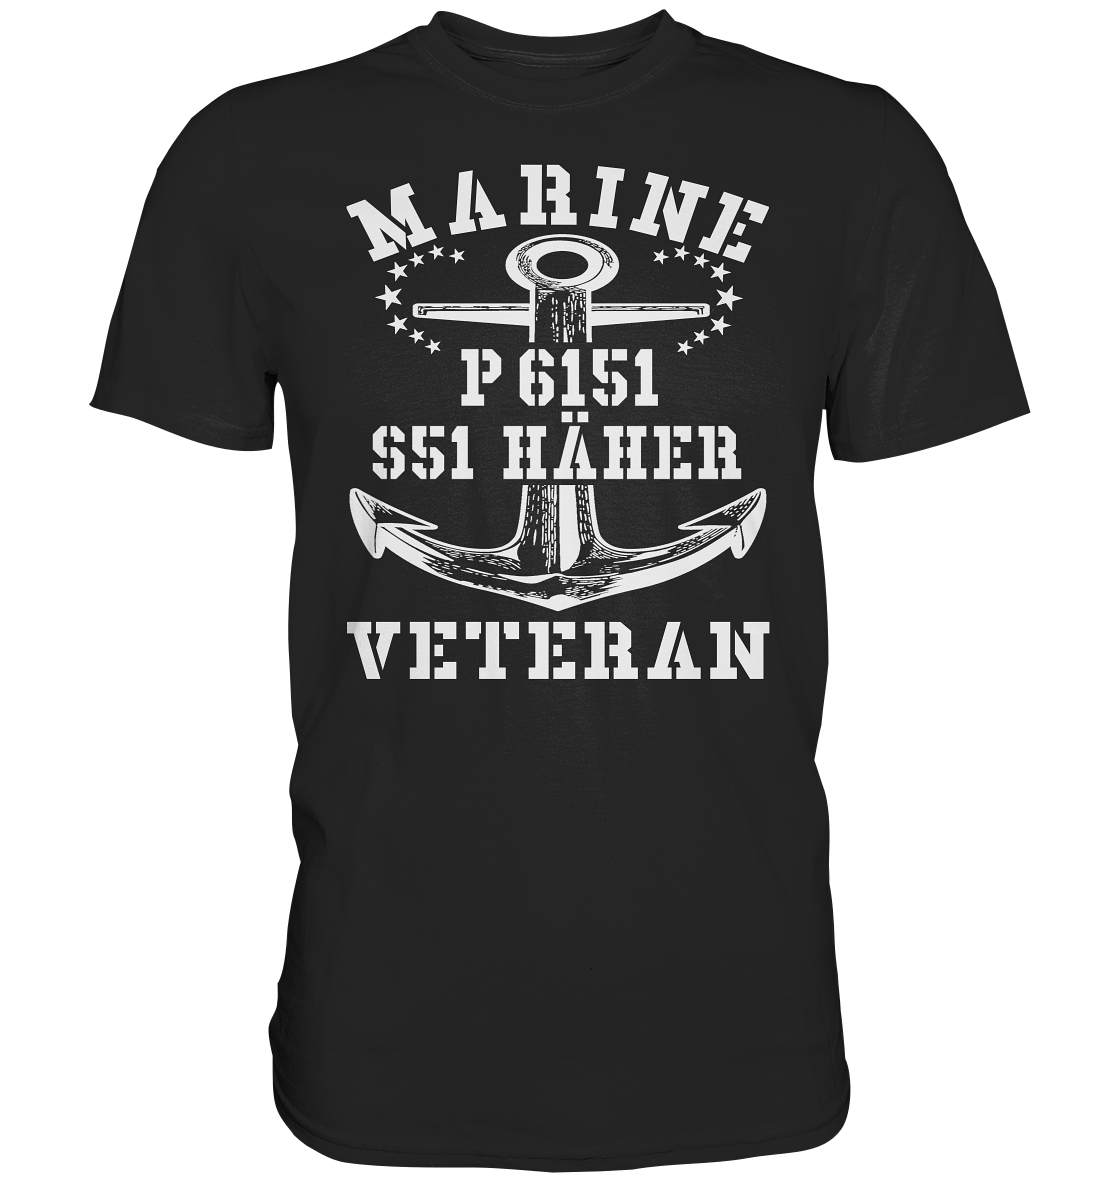 P6151 S51 HÄHER Marine Veteran - Premium Shirt